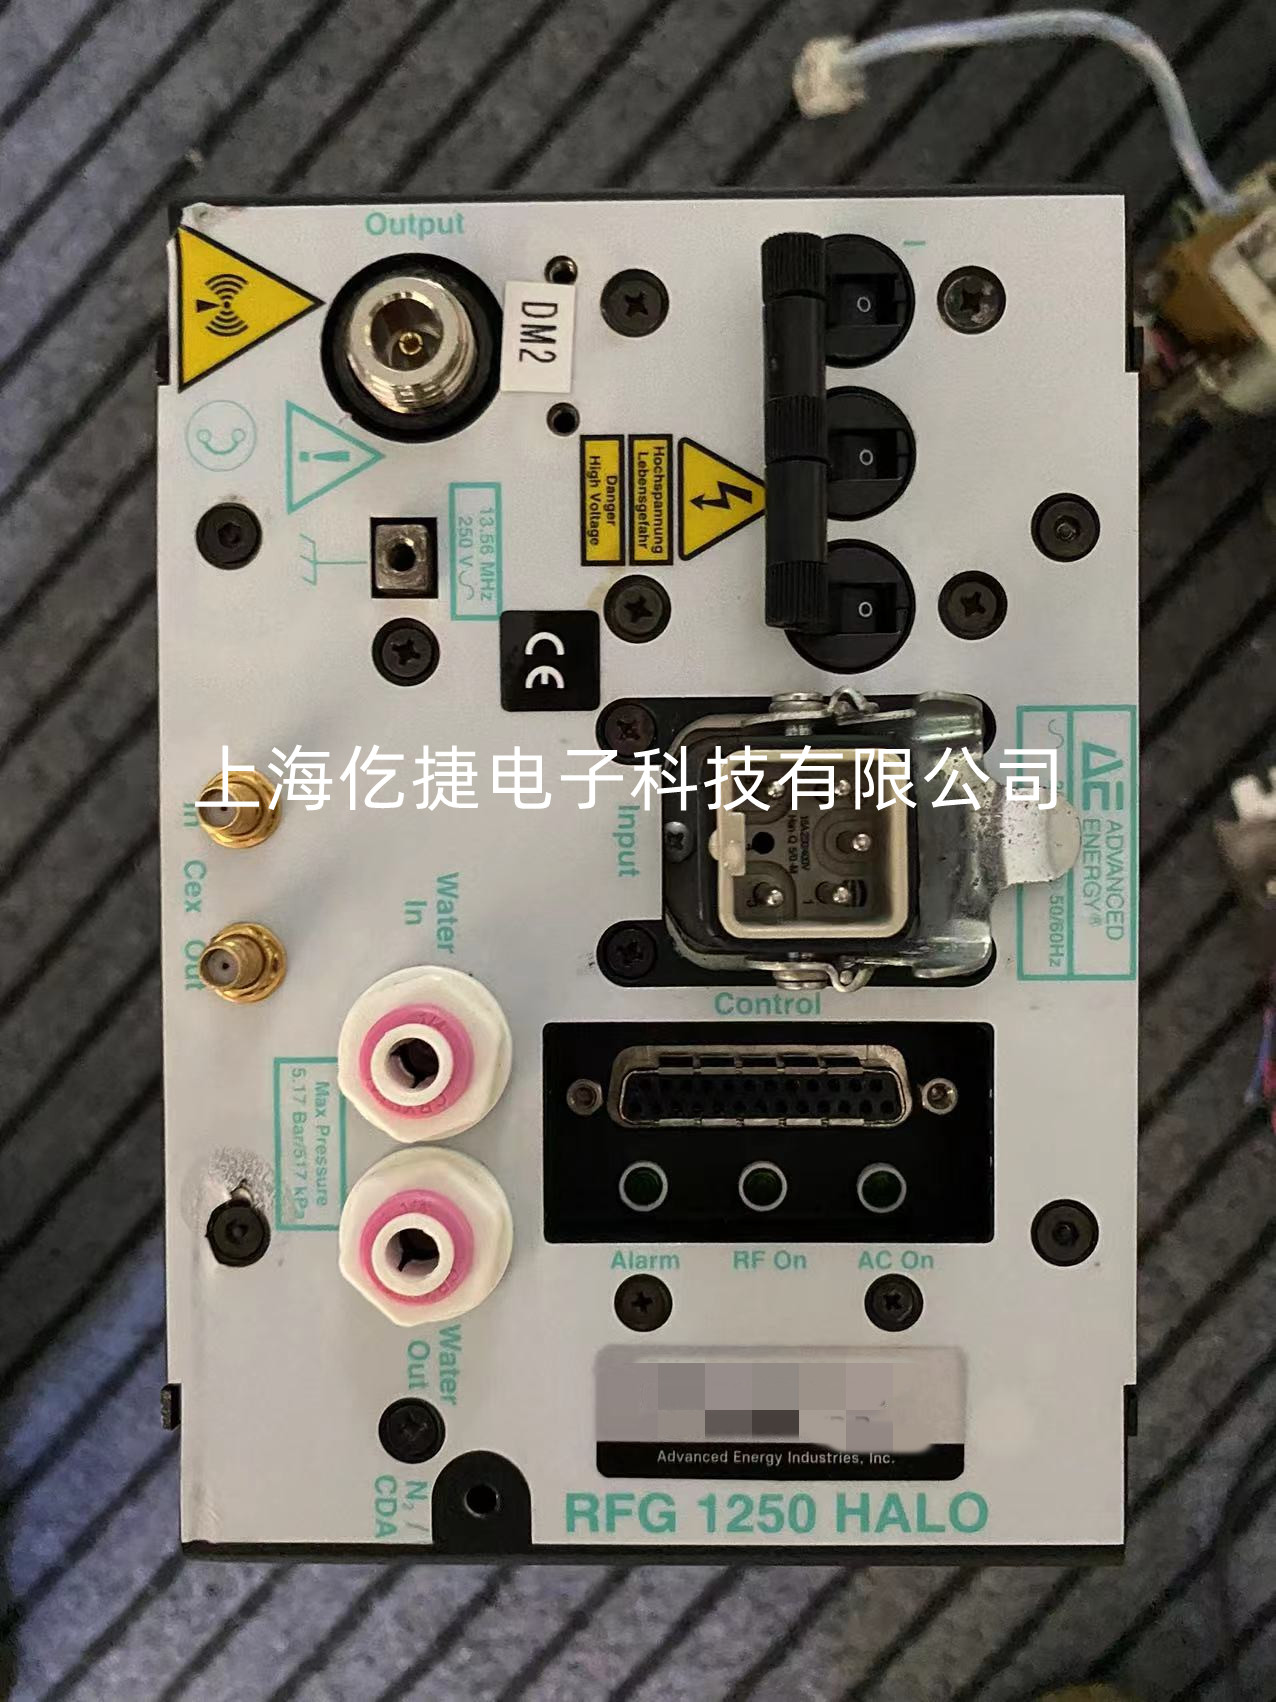 郑州AD-TEC  型号AX-4000射频电源报警故障维修